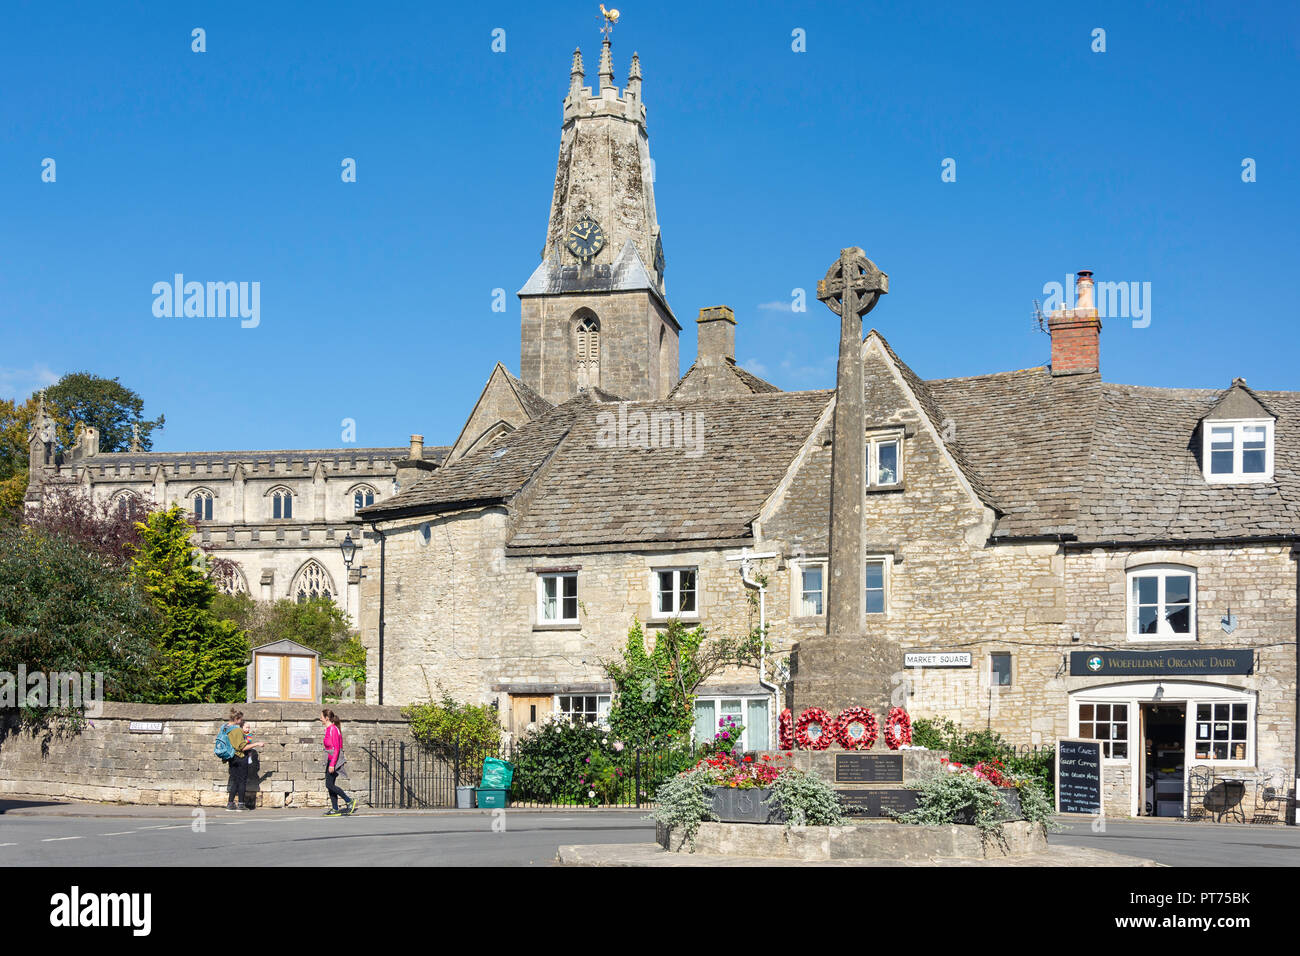 Market Square showing Holy Trinity Church, Minchinhampton, Gloucestershire, England, United Kingdom Stock Photo